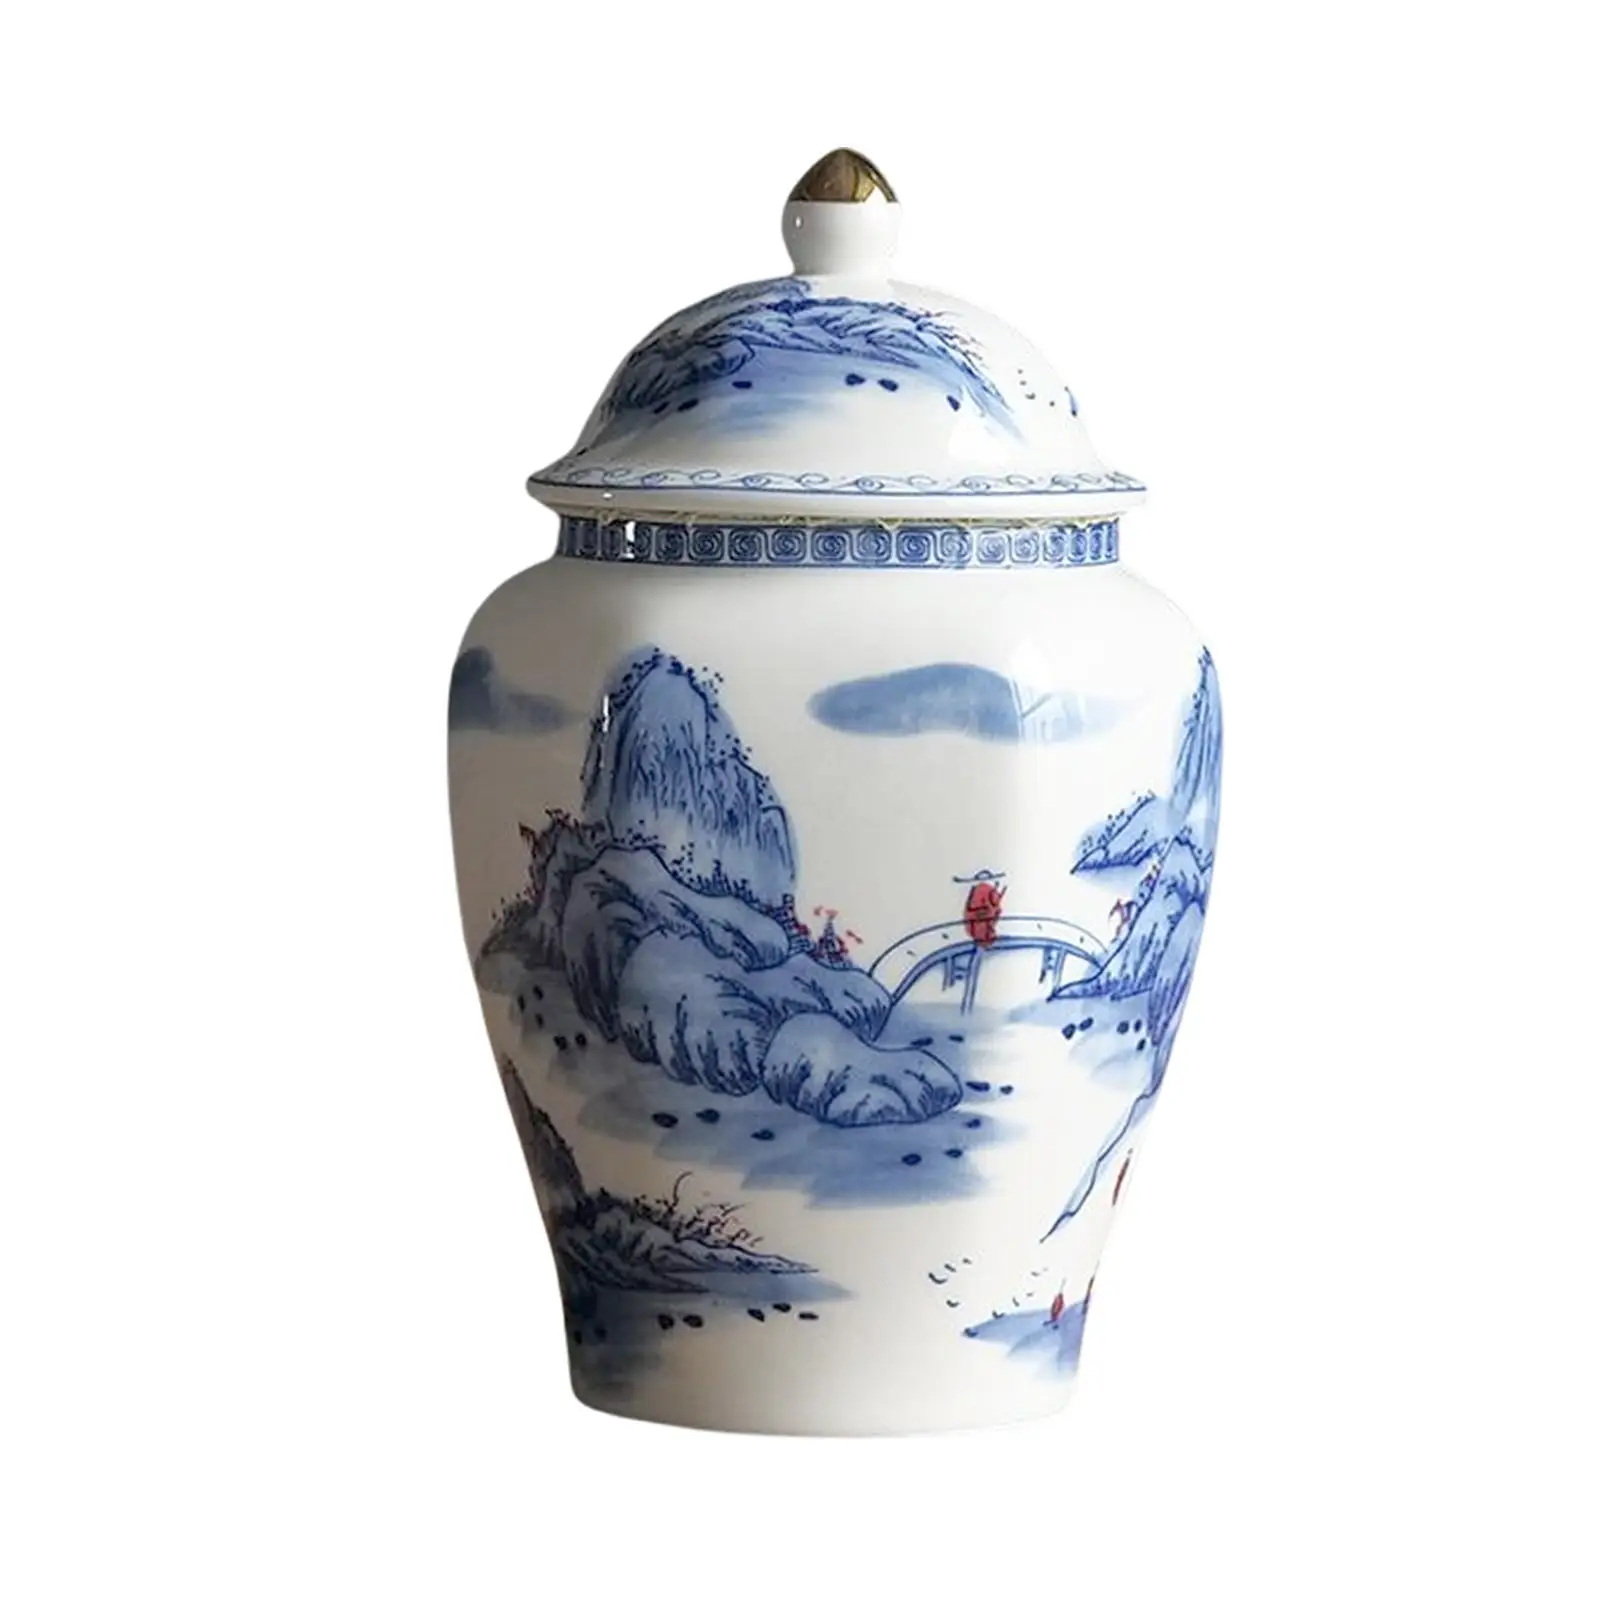 Ceramic Tea Jar with Lid Blue White Porcelain Gift for Desktop Home Decor